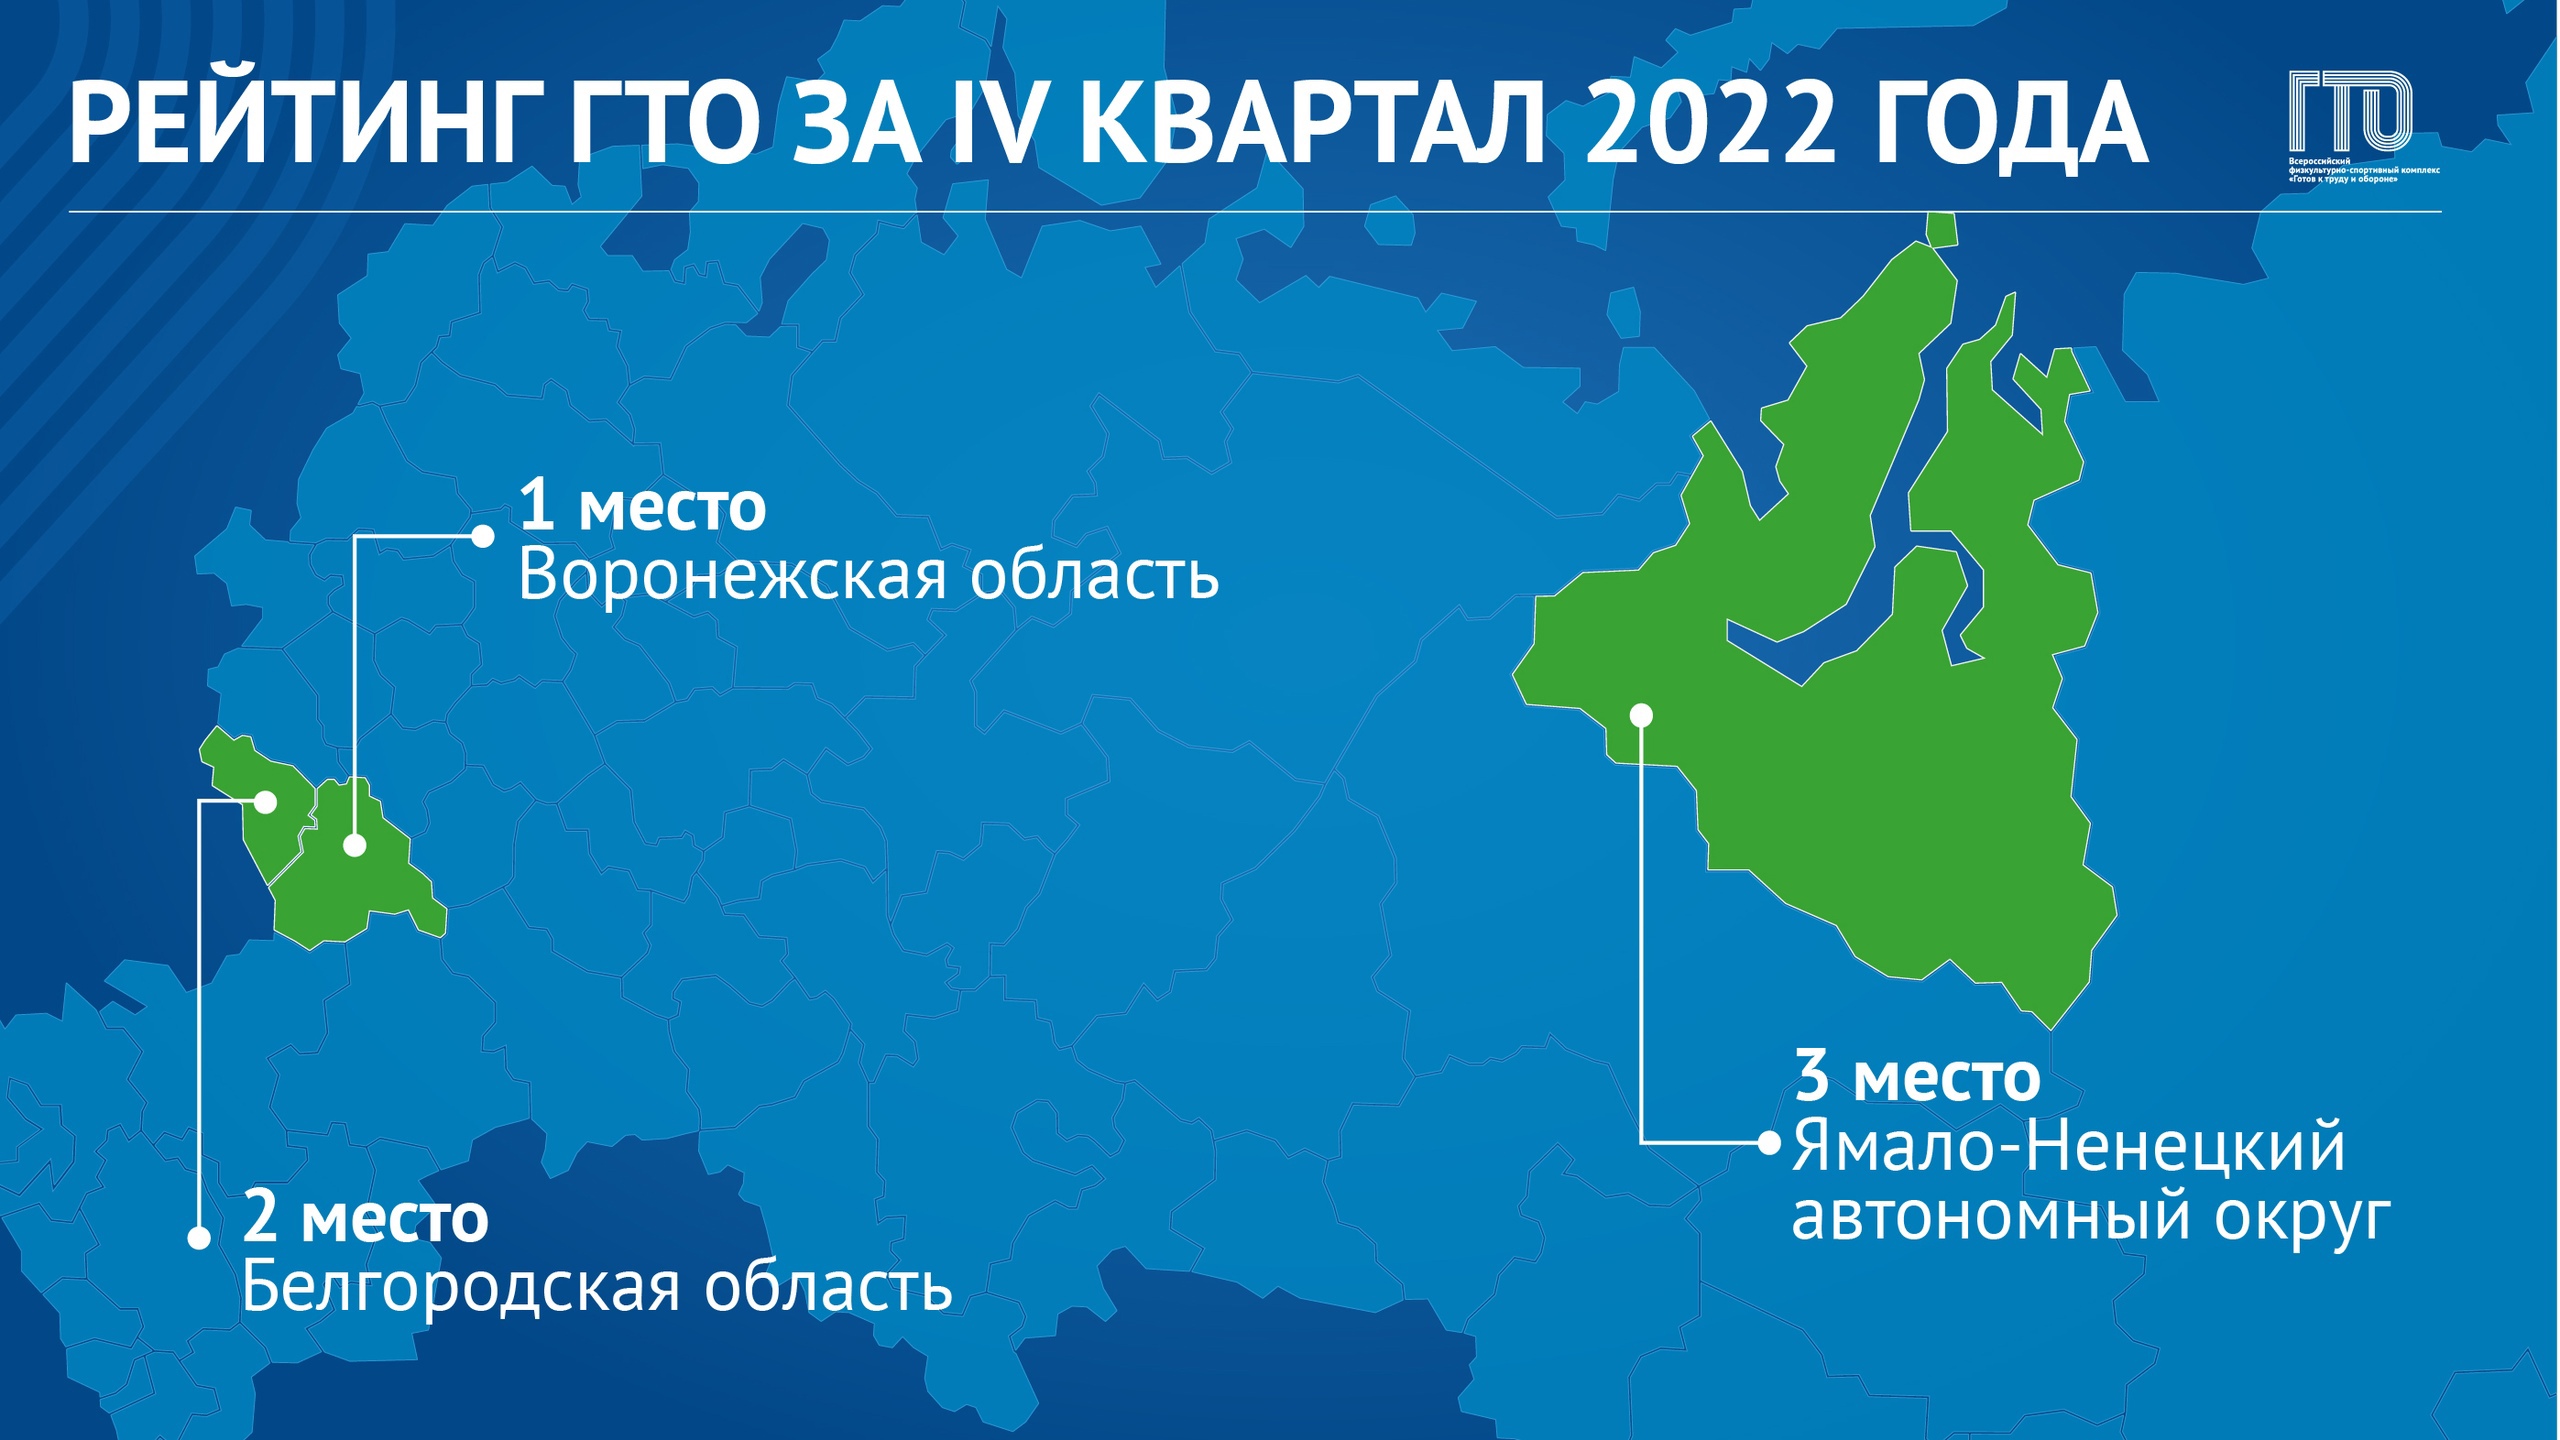 Лидерами Рейтинга ГТО по итогам IV квартала 2022 года остаются Воронежская и Белгородская области